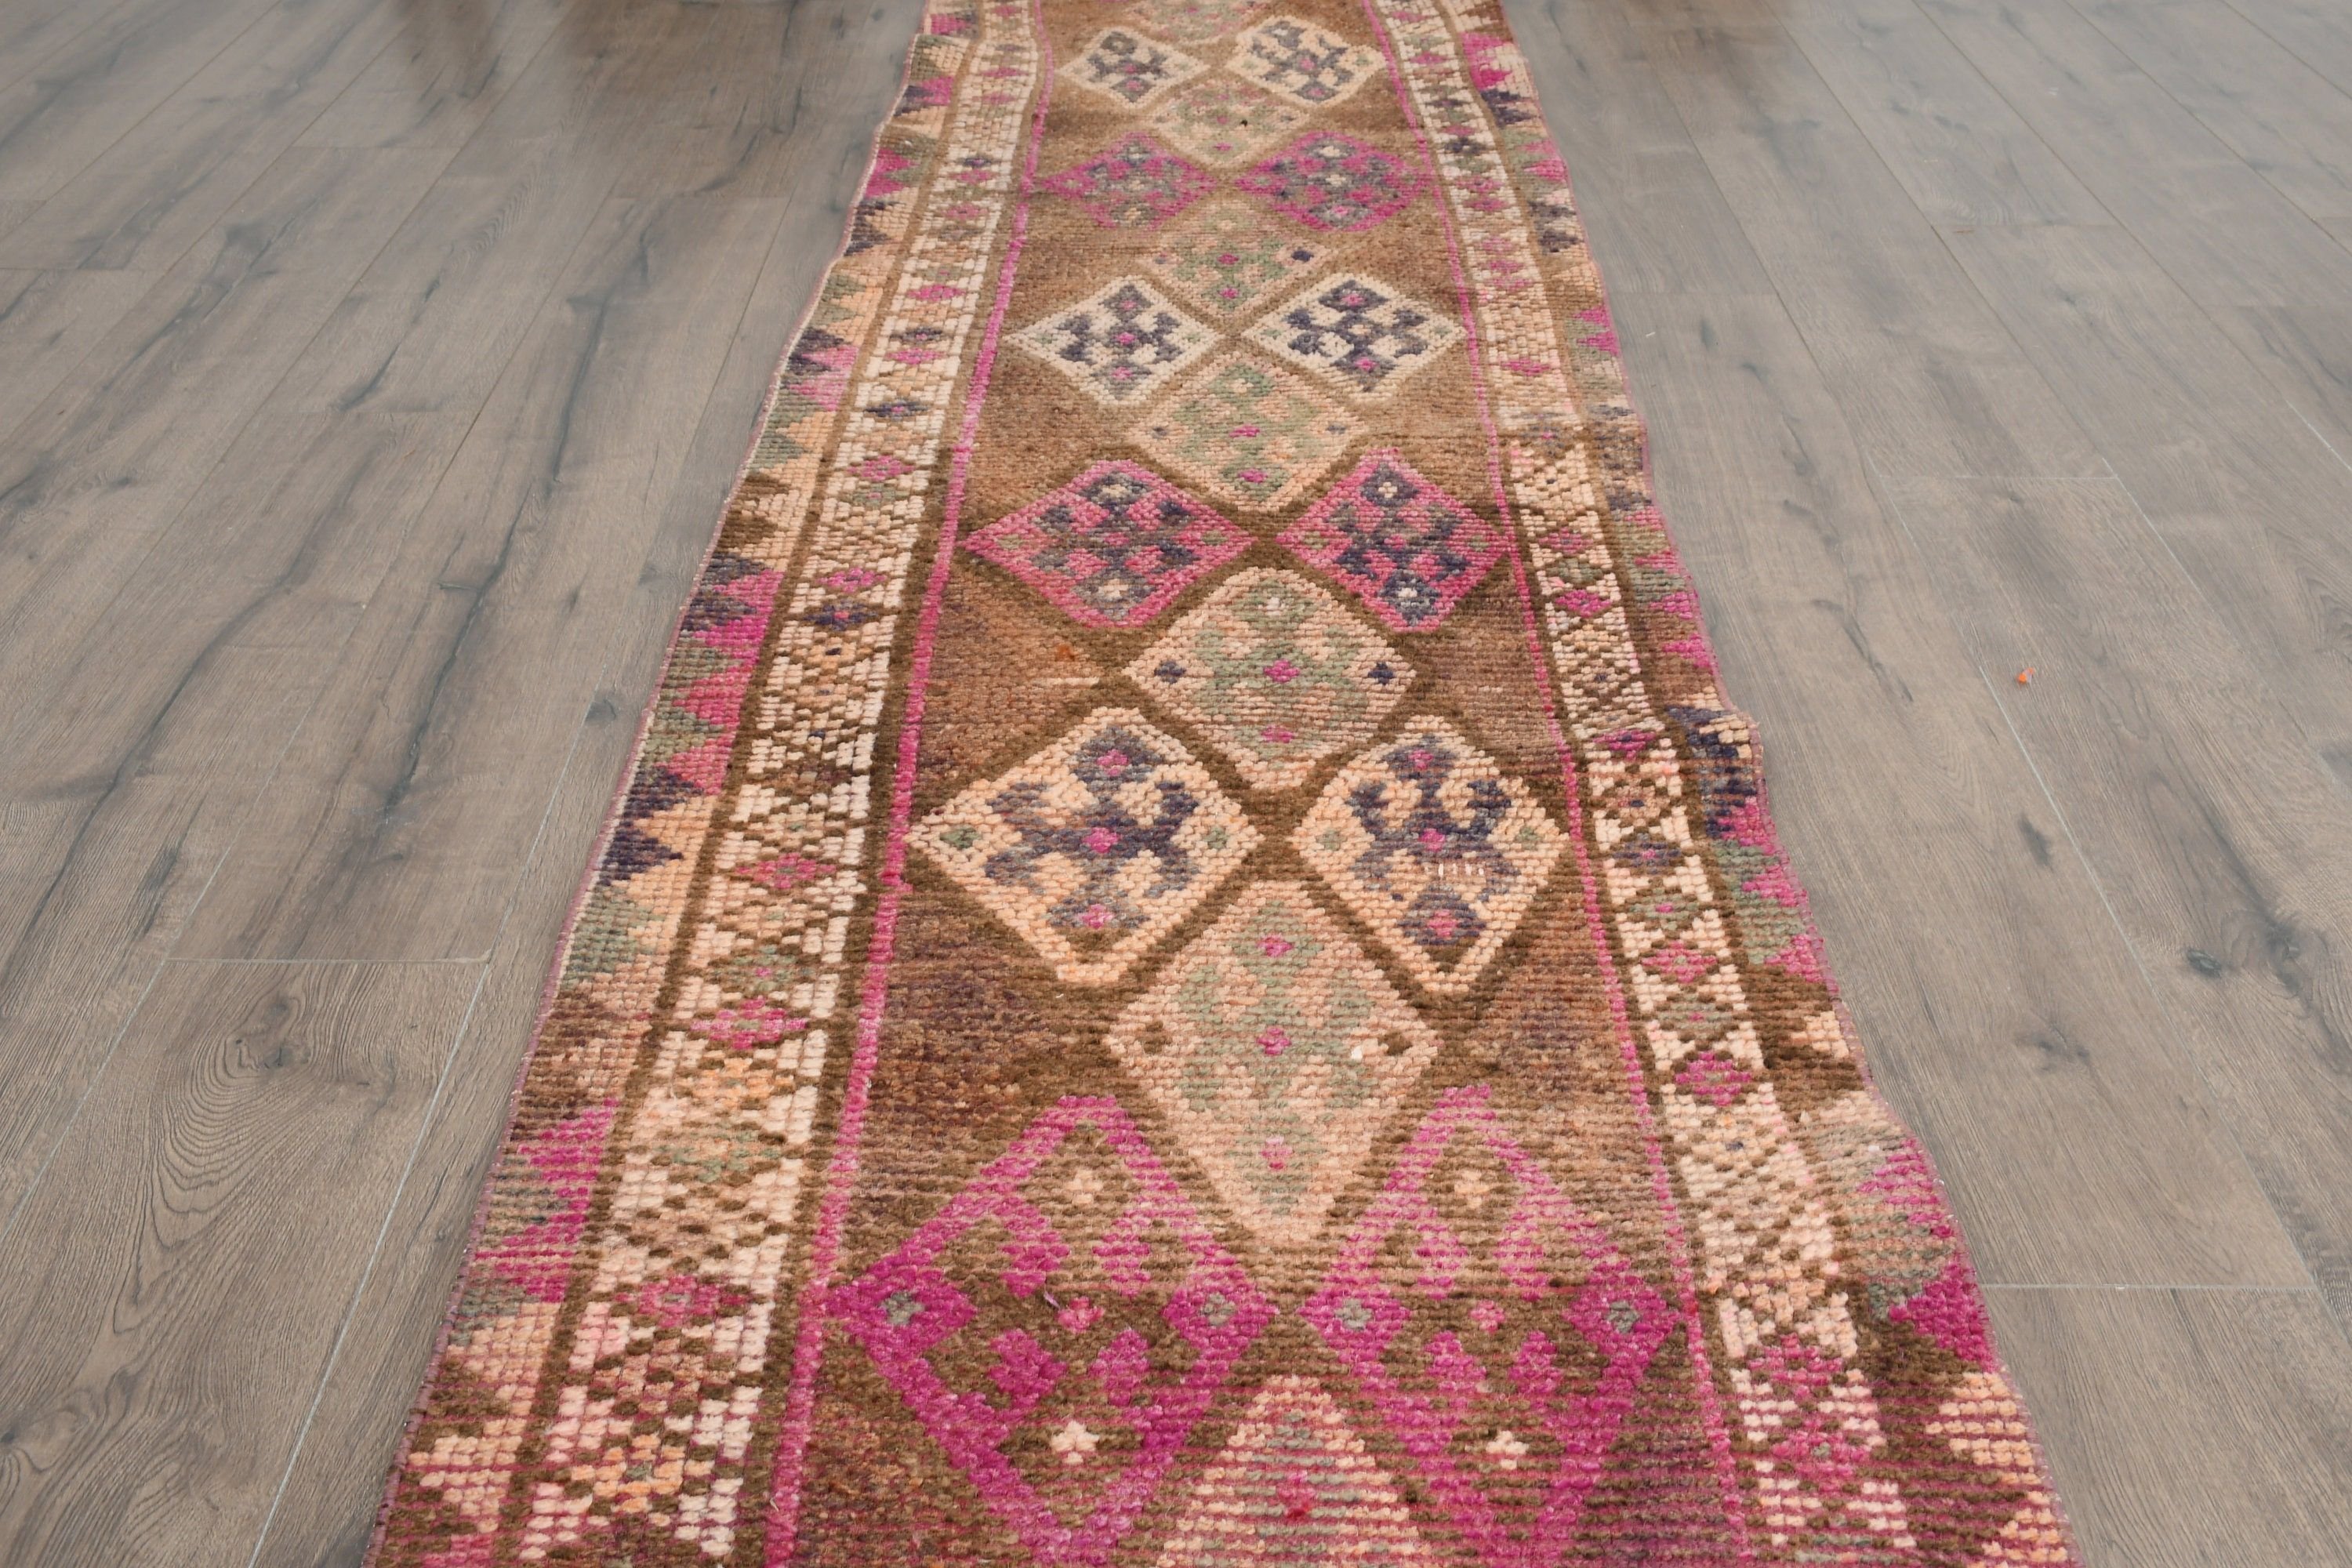 Pink Wool Rug, Rugs for Corridor, Home Decor Rugs, 2.4x11.7 ft Runner Rug, Hallway Rugs, Cool Rug, Turkish Rug, Vintage Rugs, Stair Rug